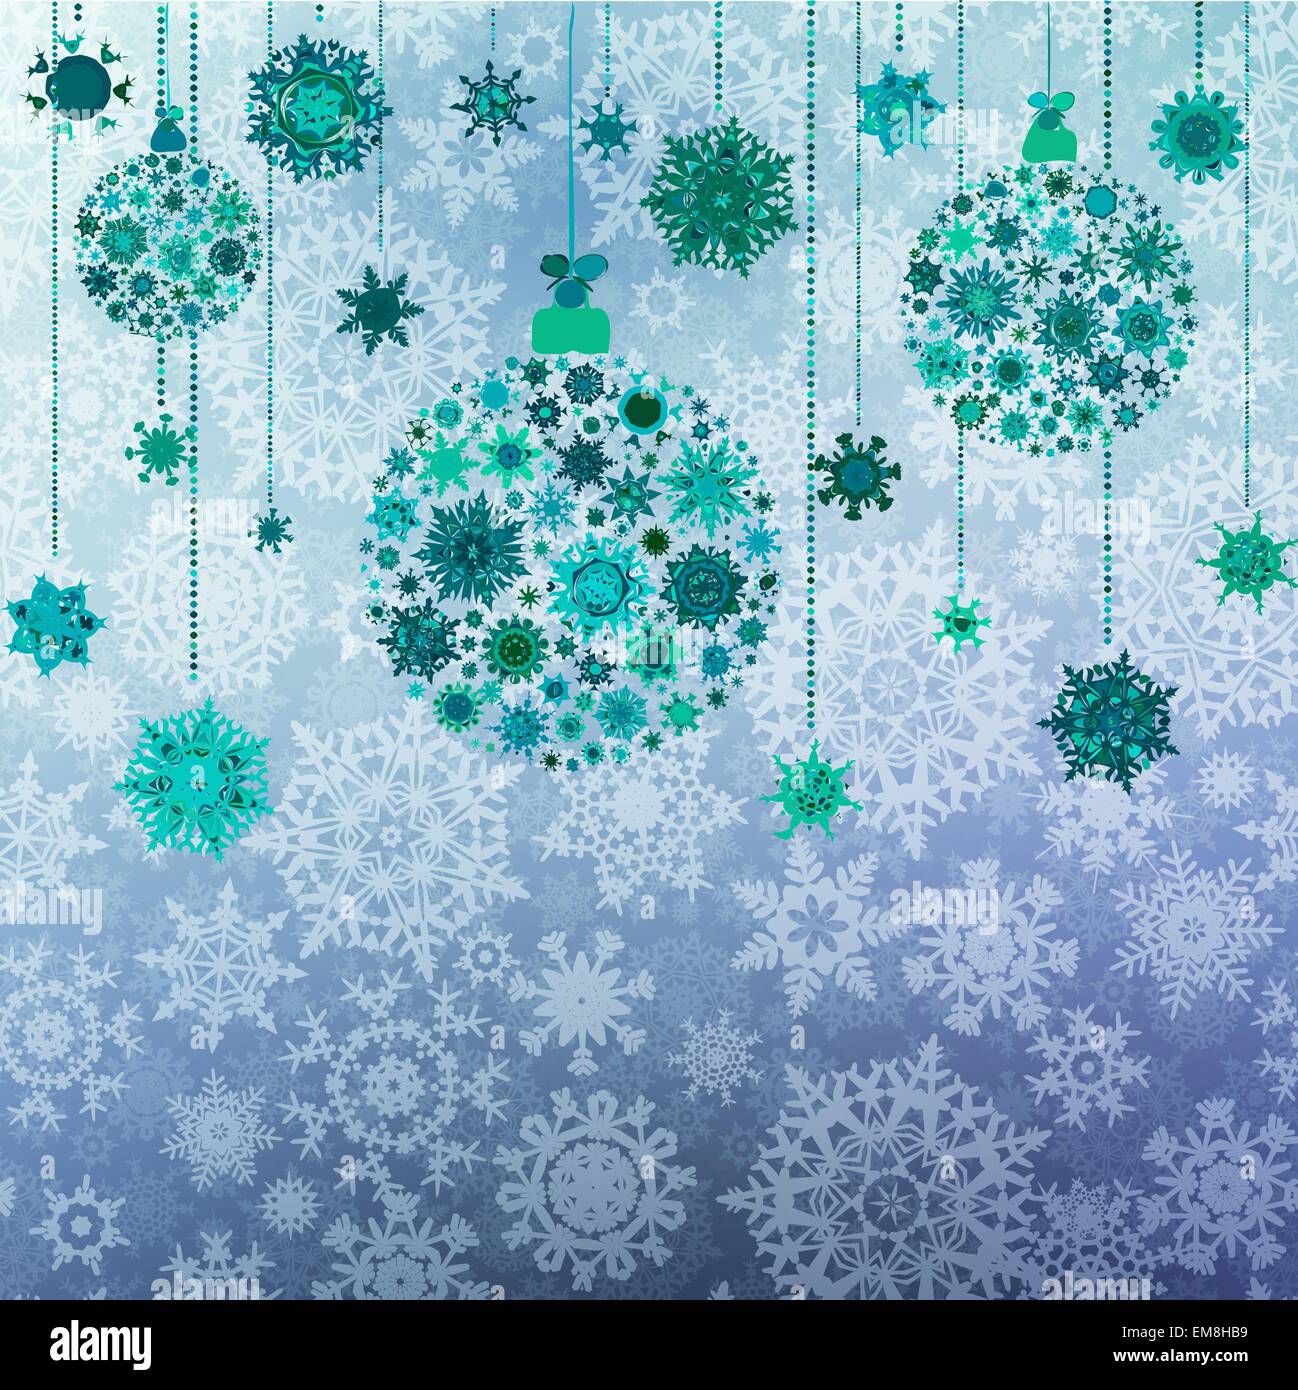 Grüne Weihnachten-Vektor-Illustration. EPS 10 Stock Vektor